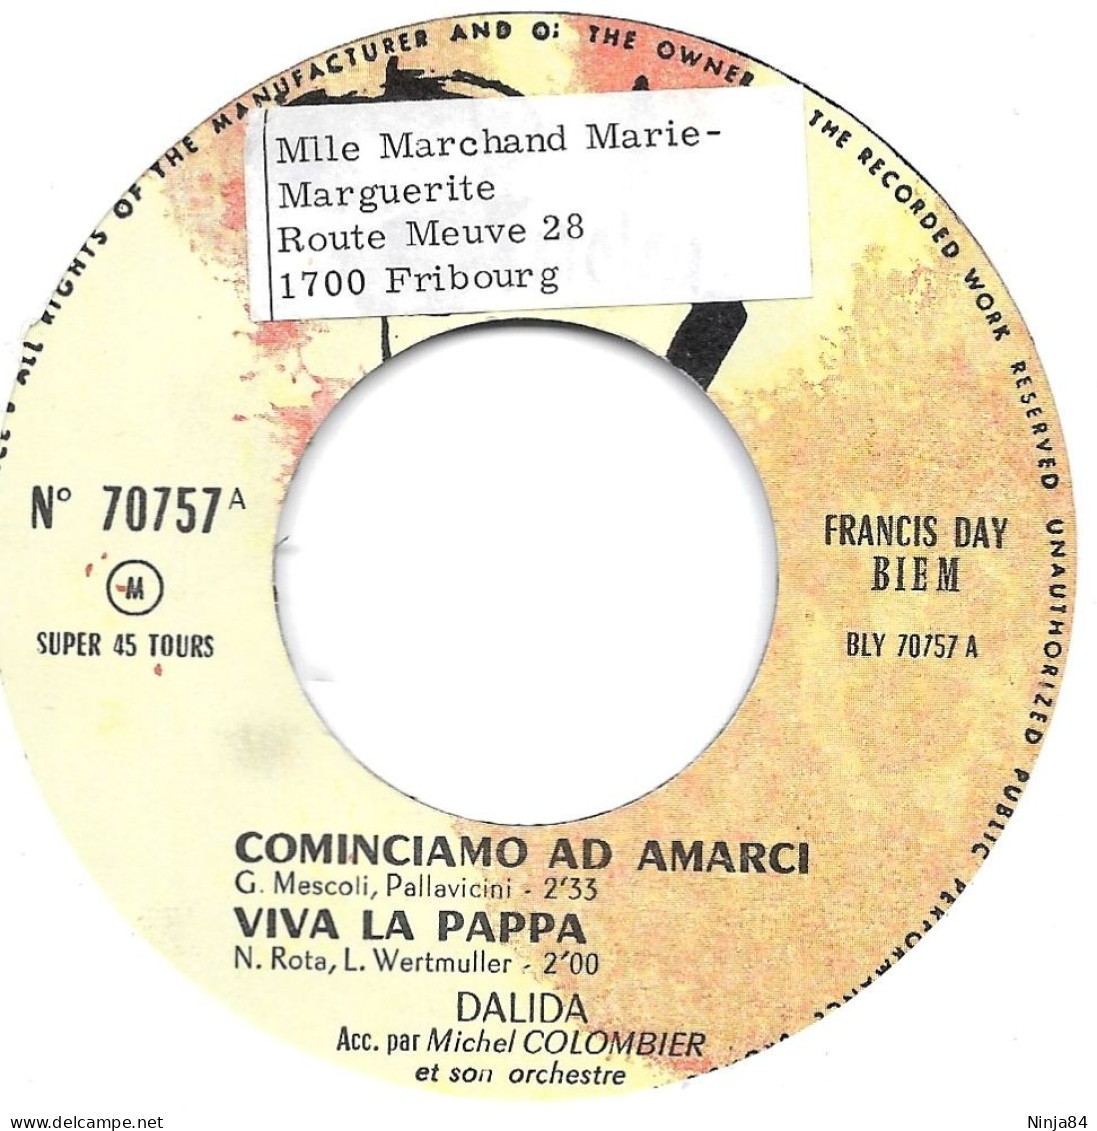 EP 45 RPM (7") Dalida  "  Canta In Italiano  " - Sonstige - Franz. Chansons